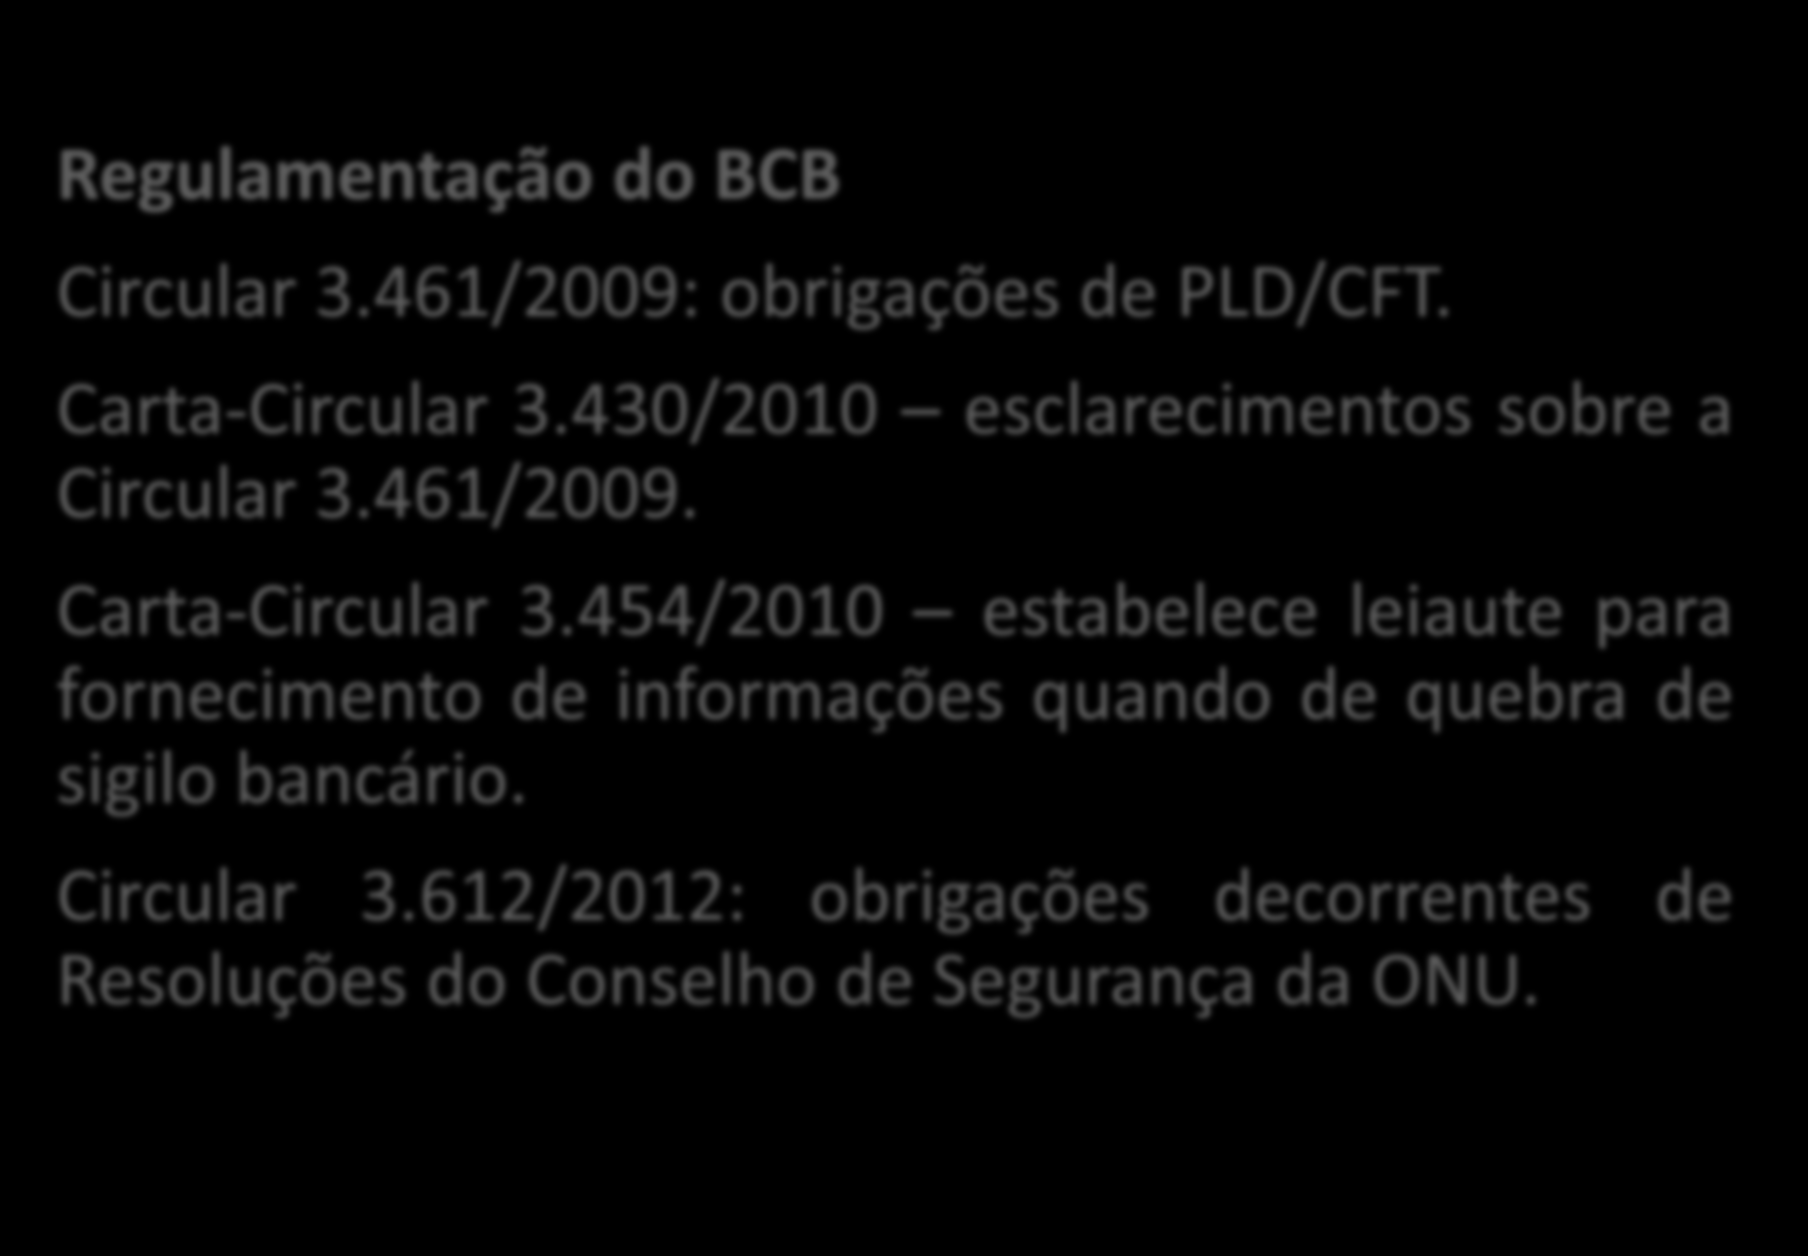 Princípios Regulatórios 7 Regulamentação do BCB Circular 3.461/2009: obrigações de PLD/CFT. Carta-Circular 3.